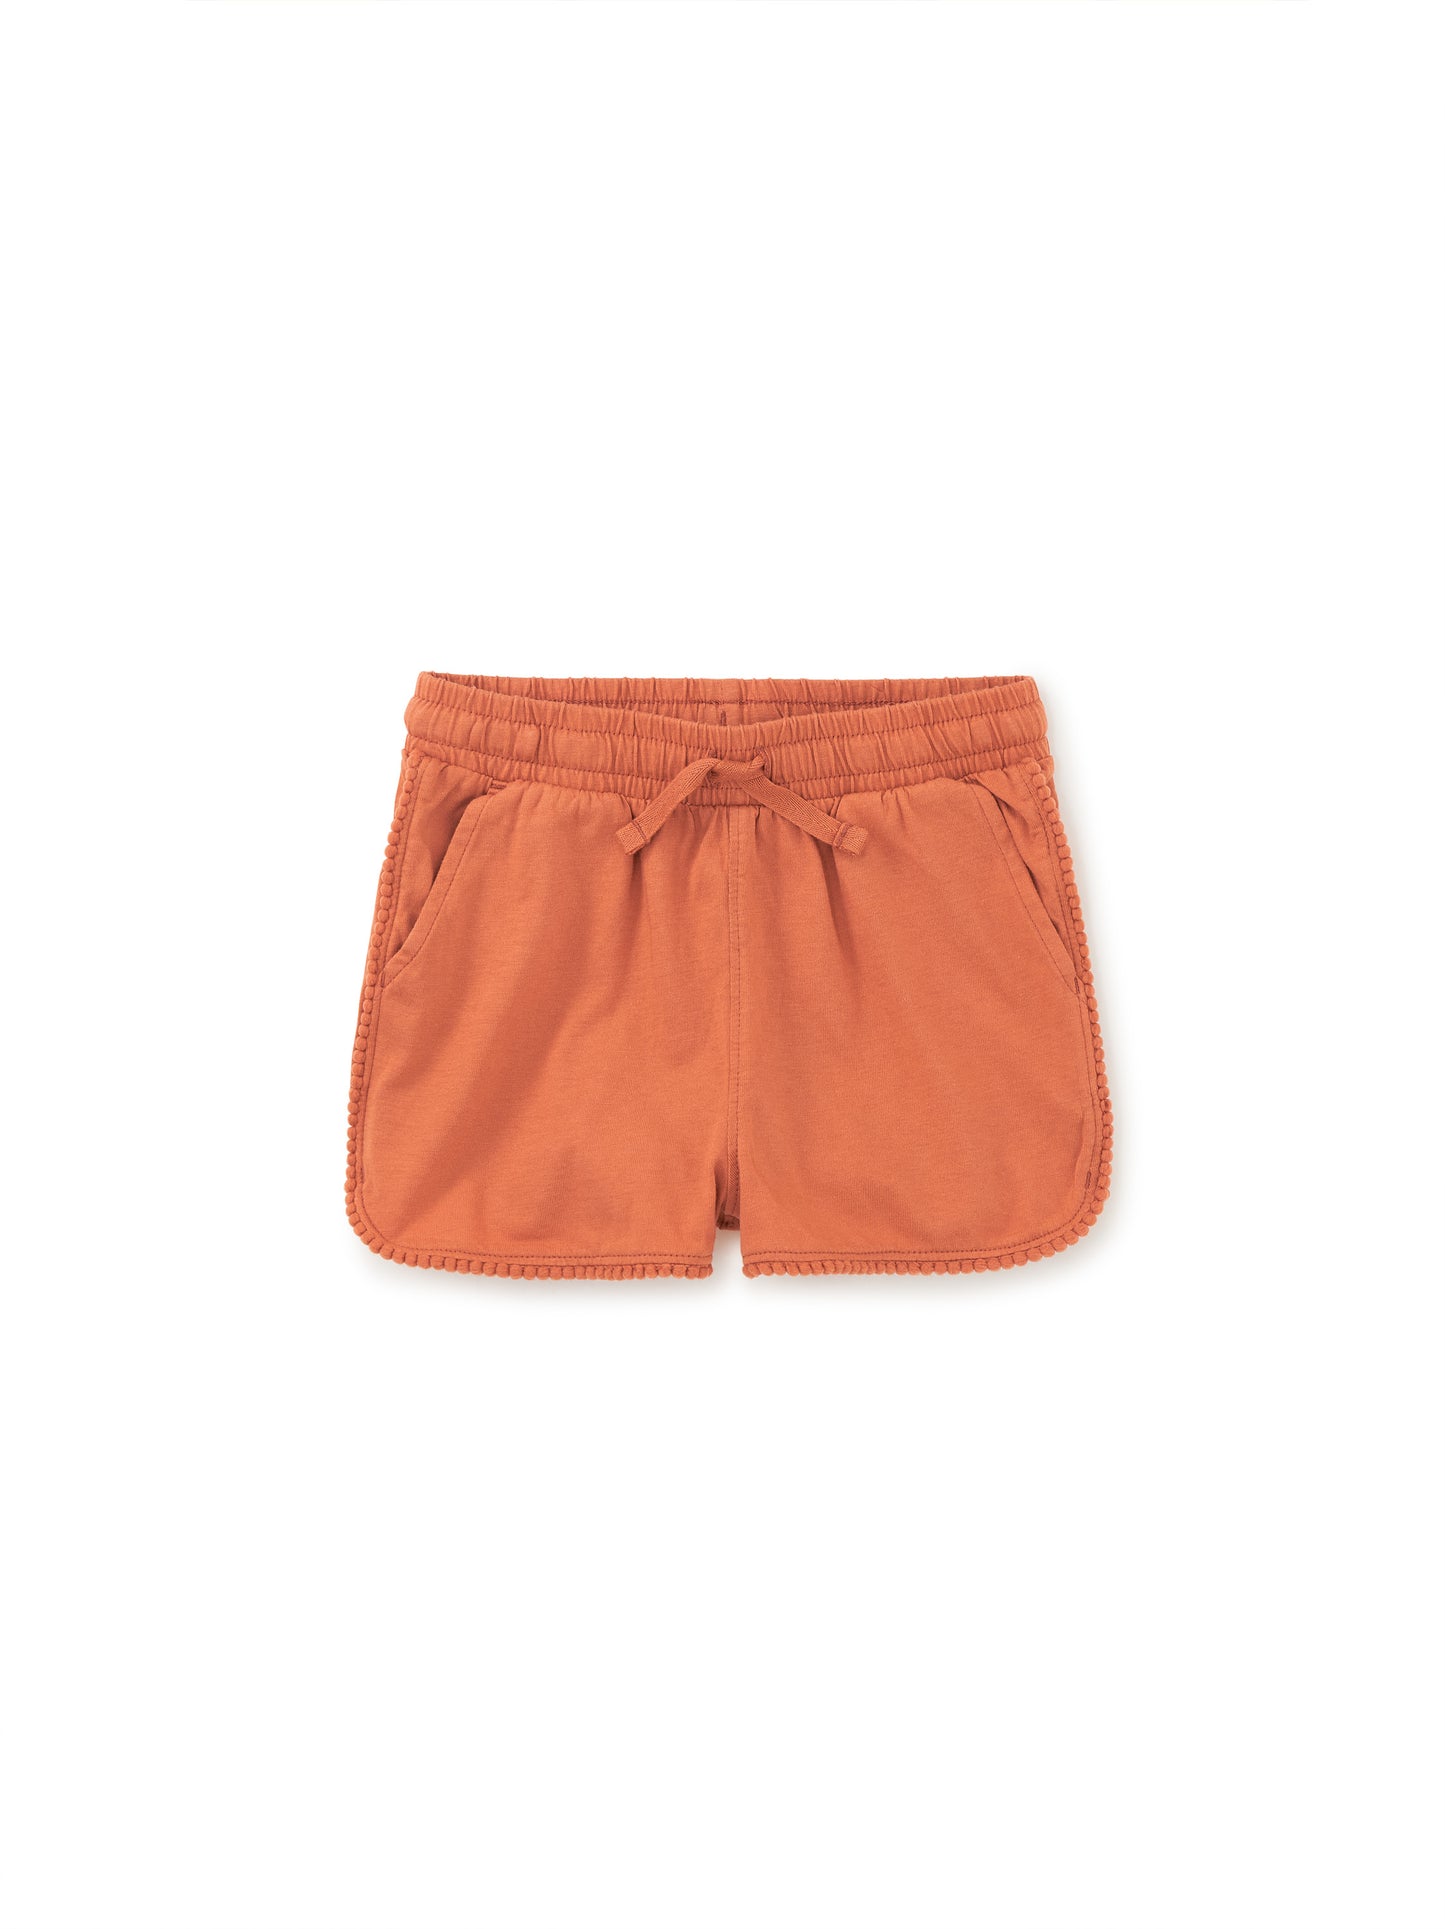 Tea Copper | Pom-Pom Gym Shorts